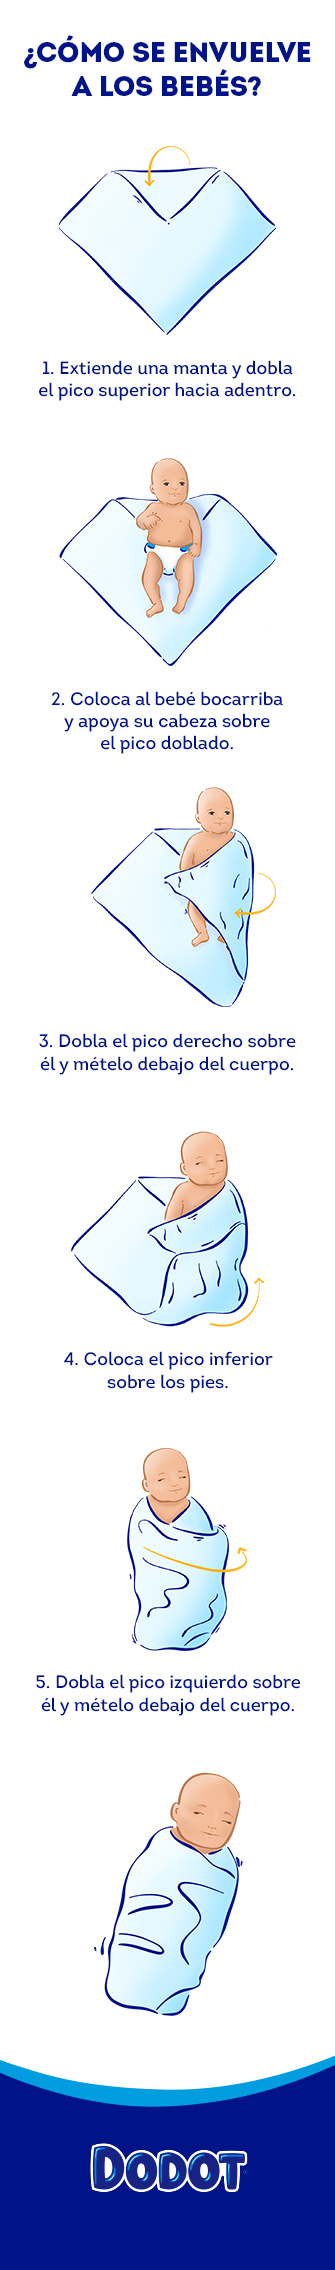 Cómo arrullar al bebé para dormir: 3 métodos infalibles